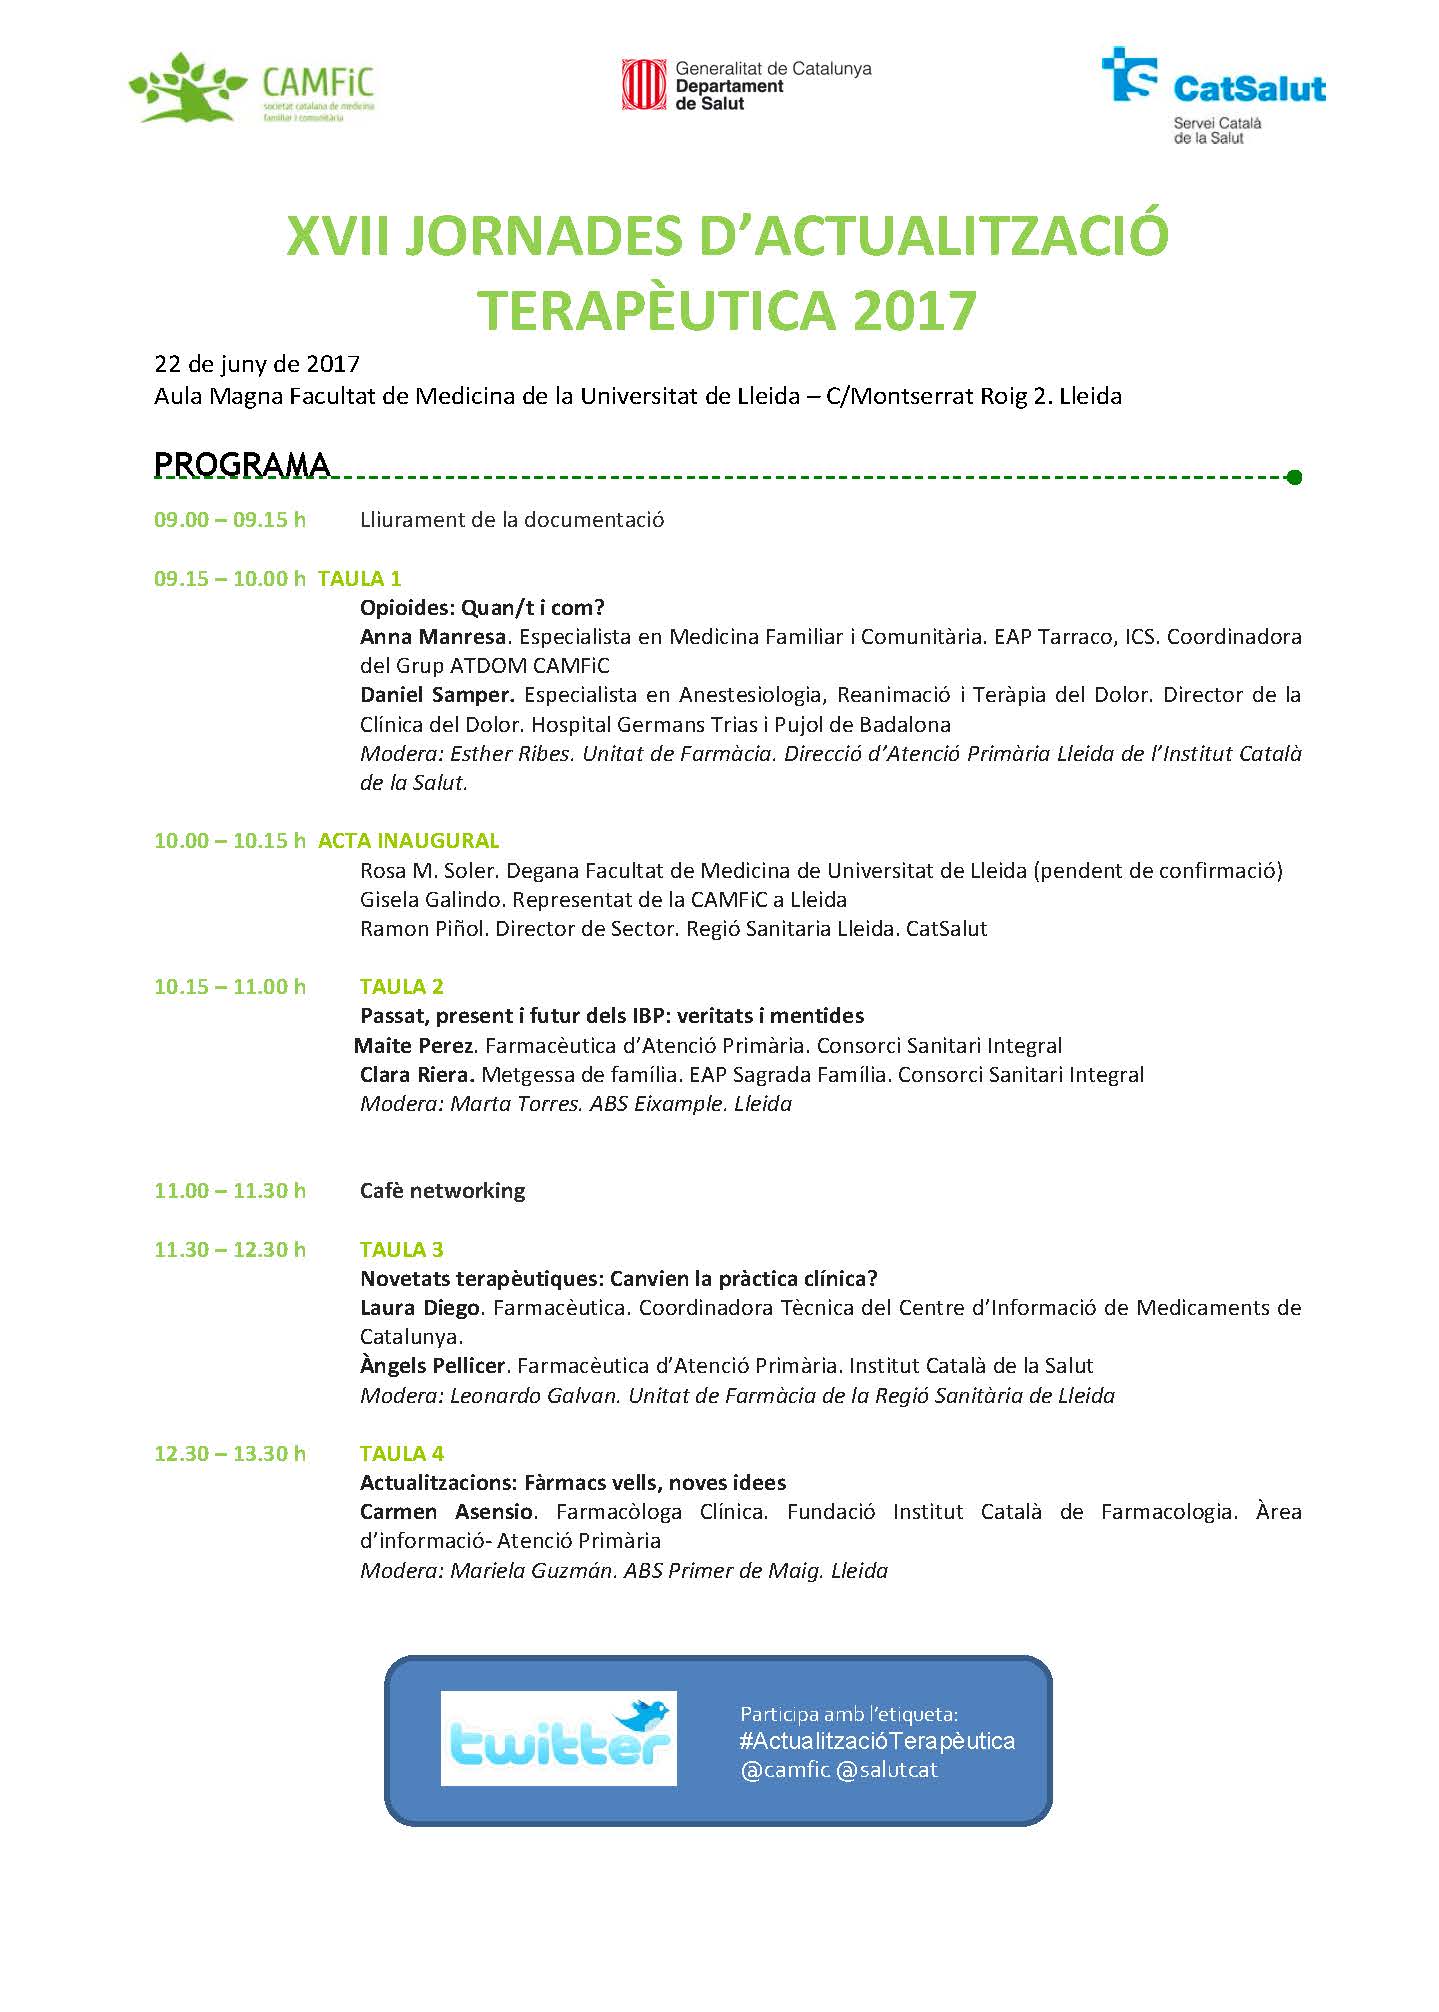 PROGRAMA XVll Jornades Terapeutiques Lleida-2